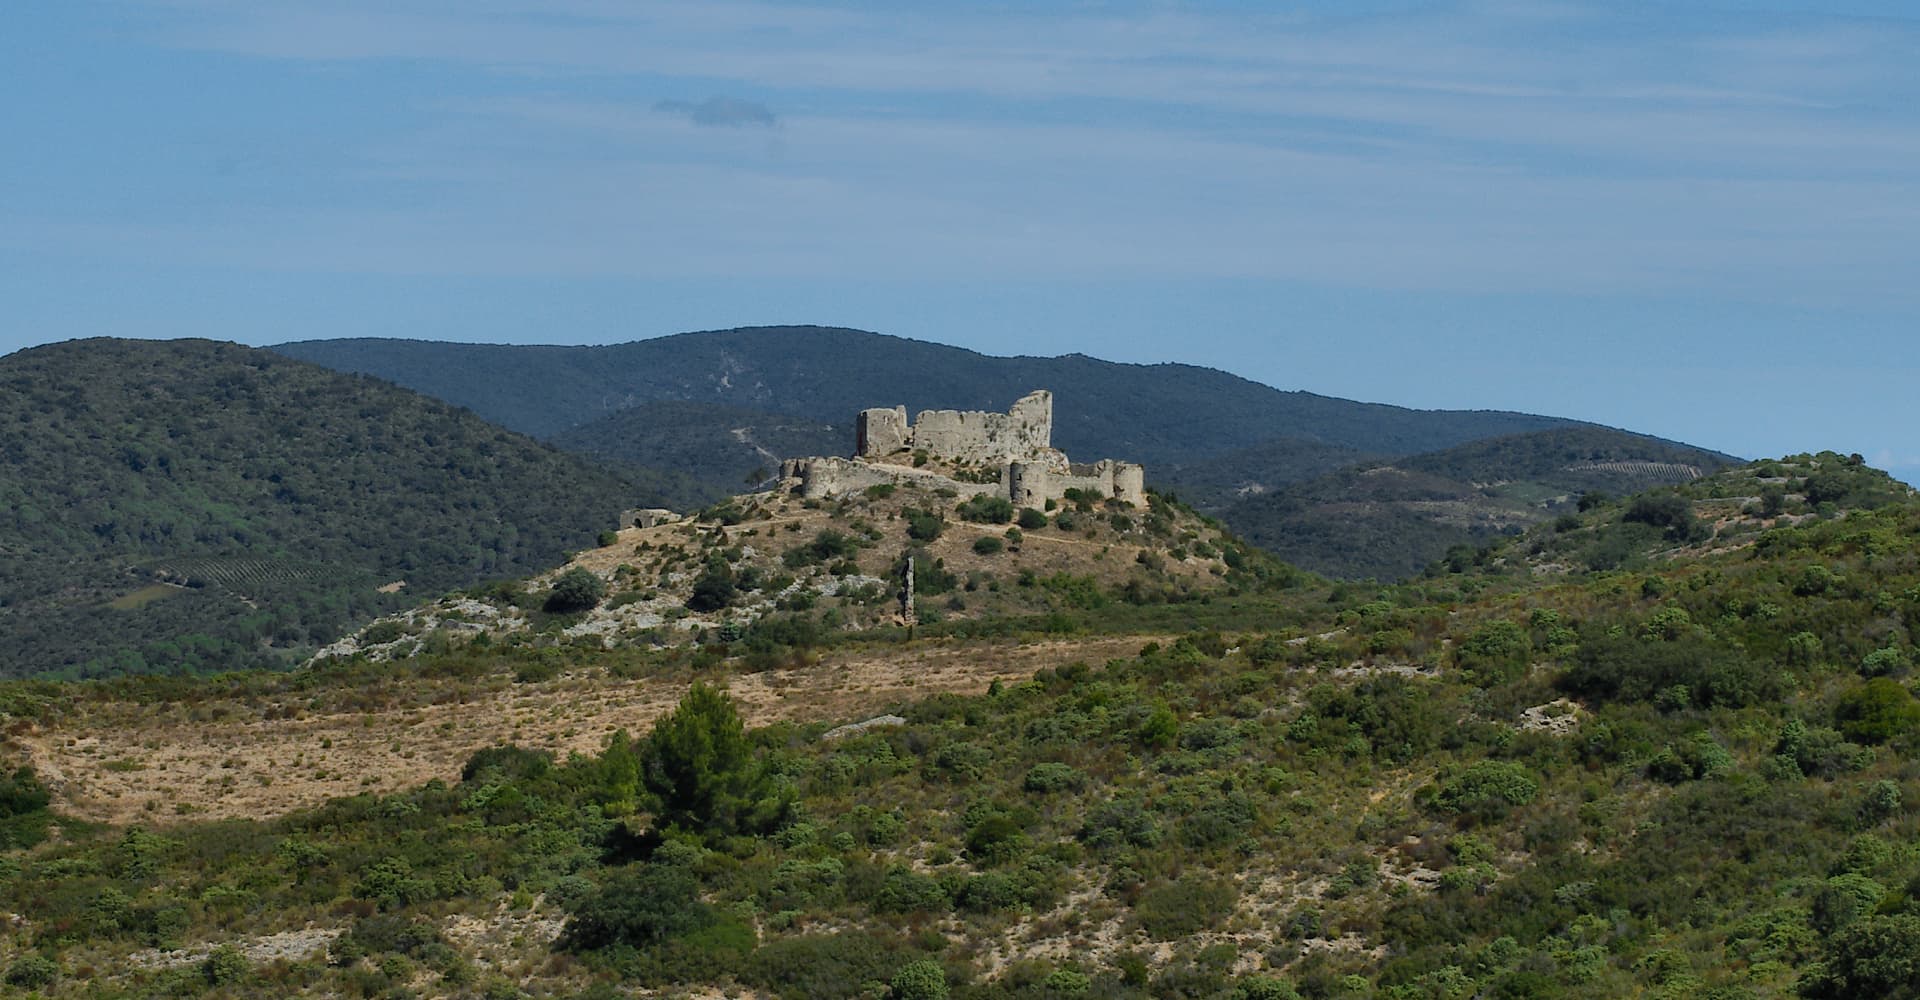 Le château cathare d'Aguilar, depuis le point d'observation sur la route qui relie Tuchan à Vingrau (photographie : Philippe Contal, 2019)